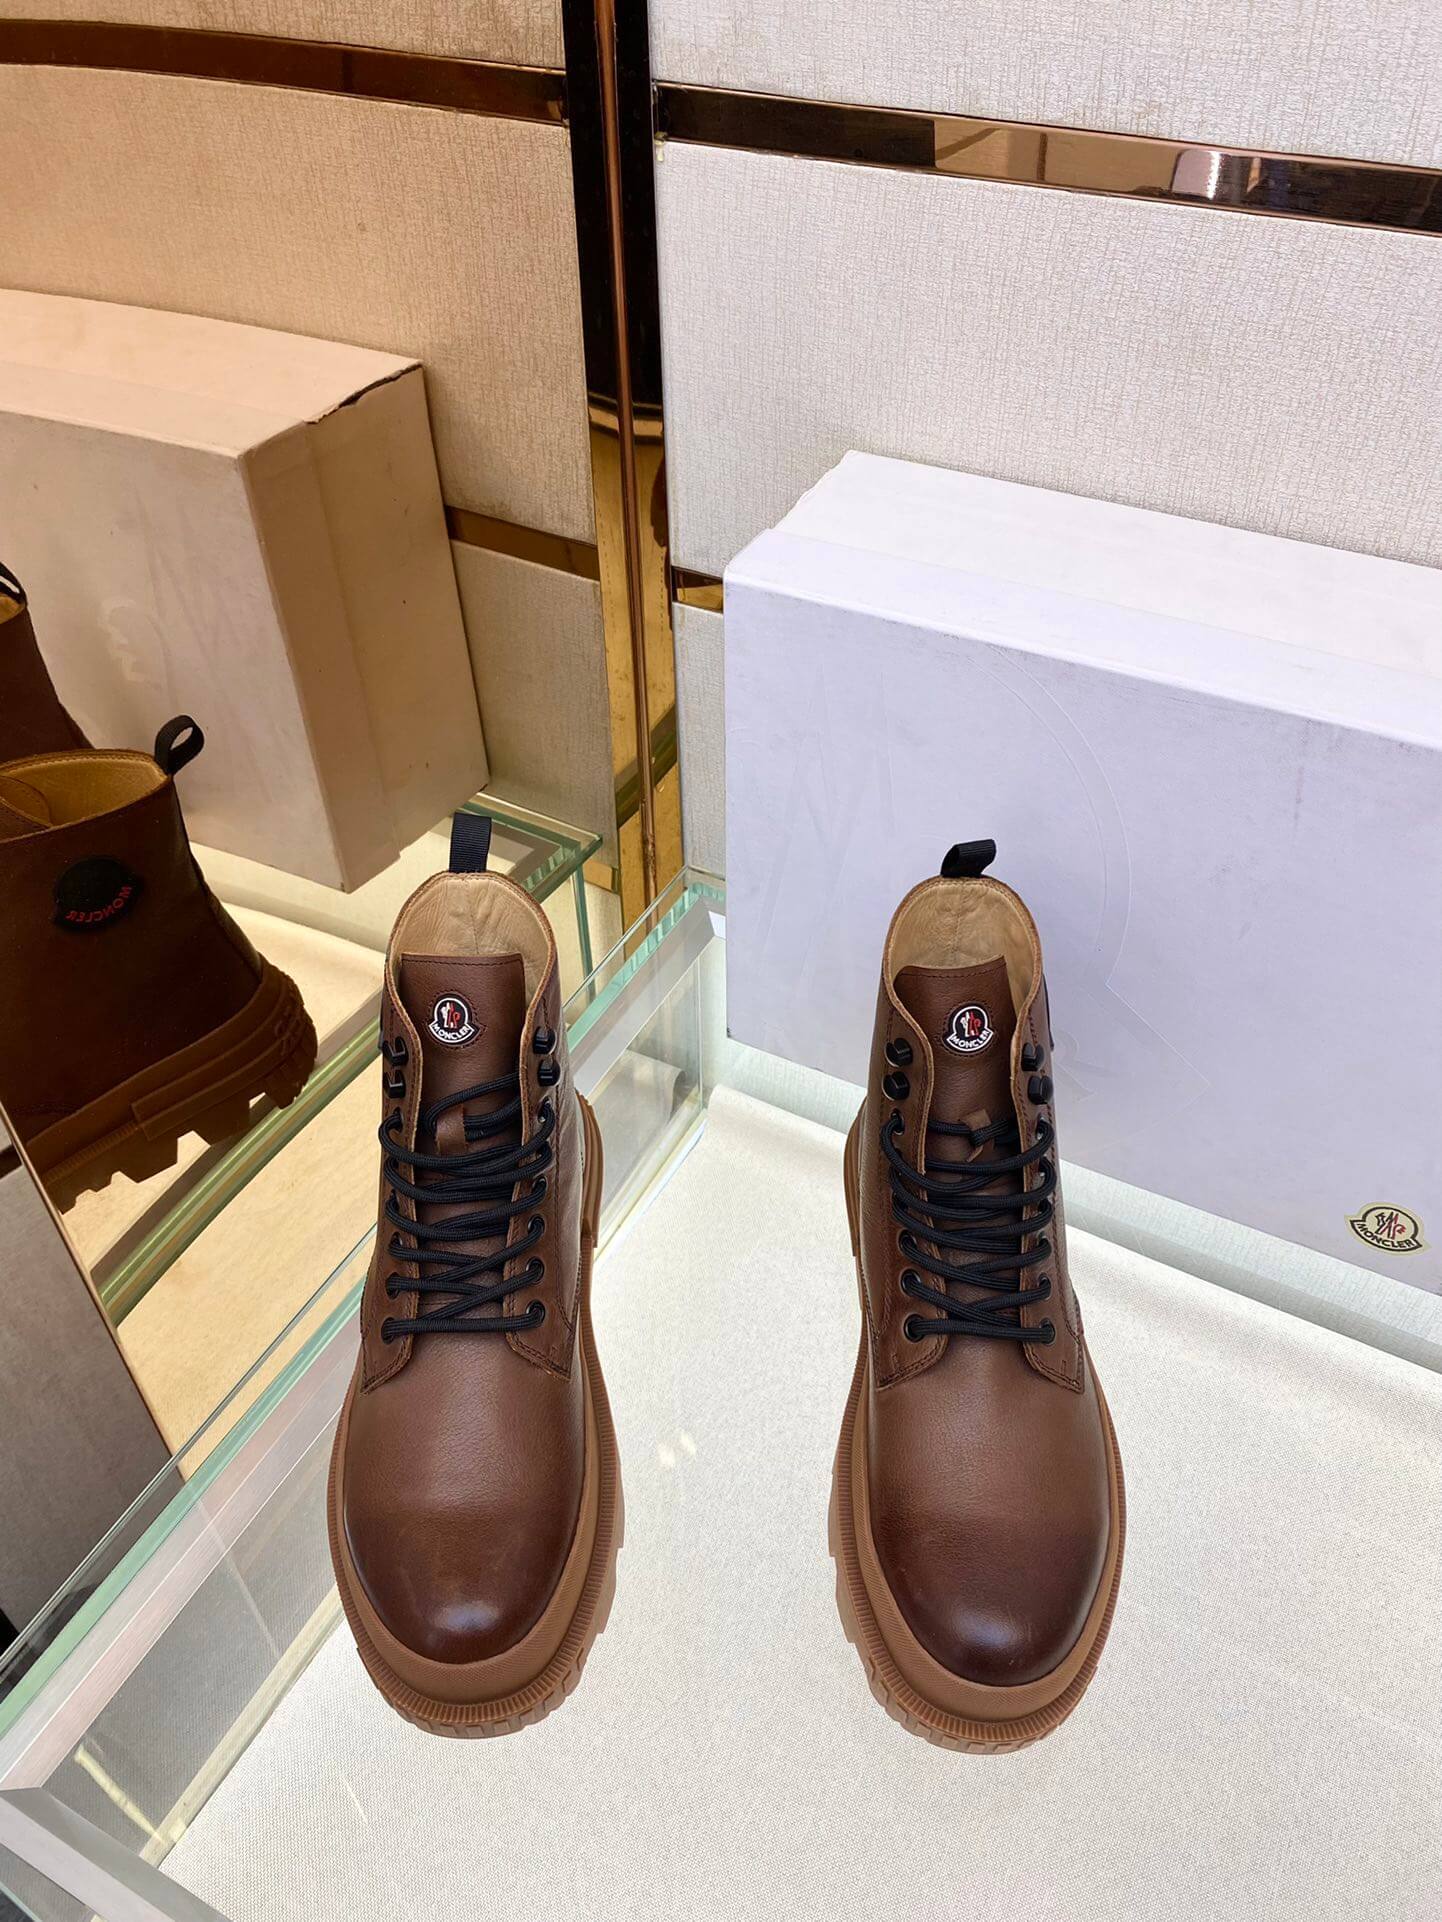 Men's shoes Compassor Moncler 38-44 Men's Size brown